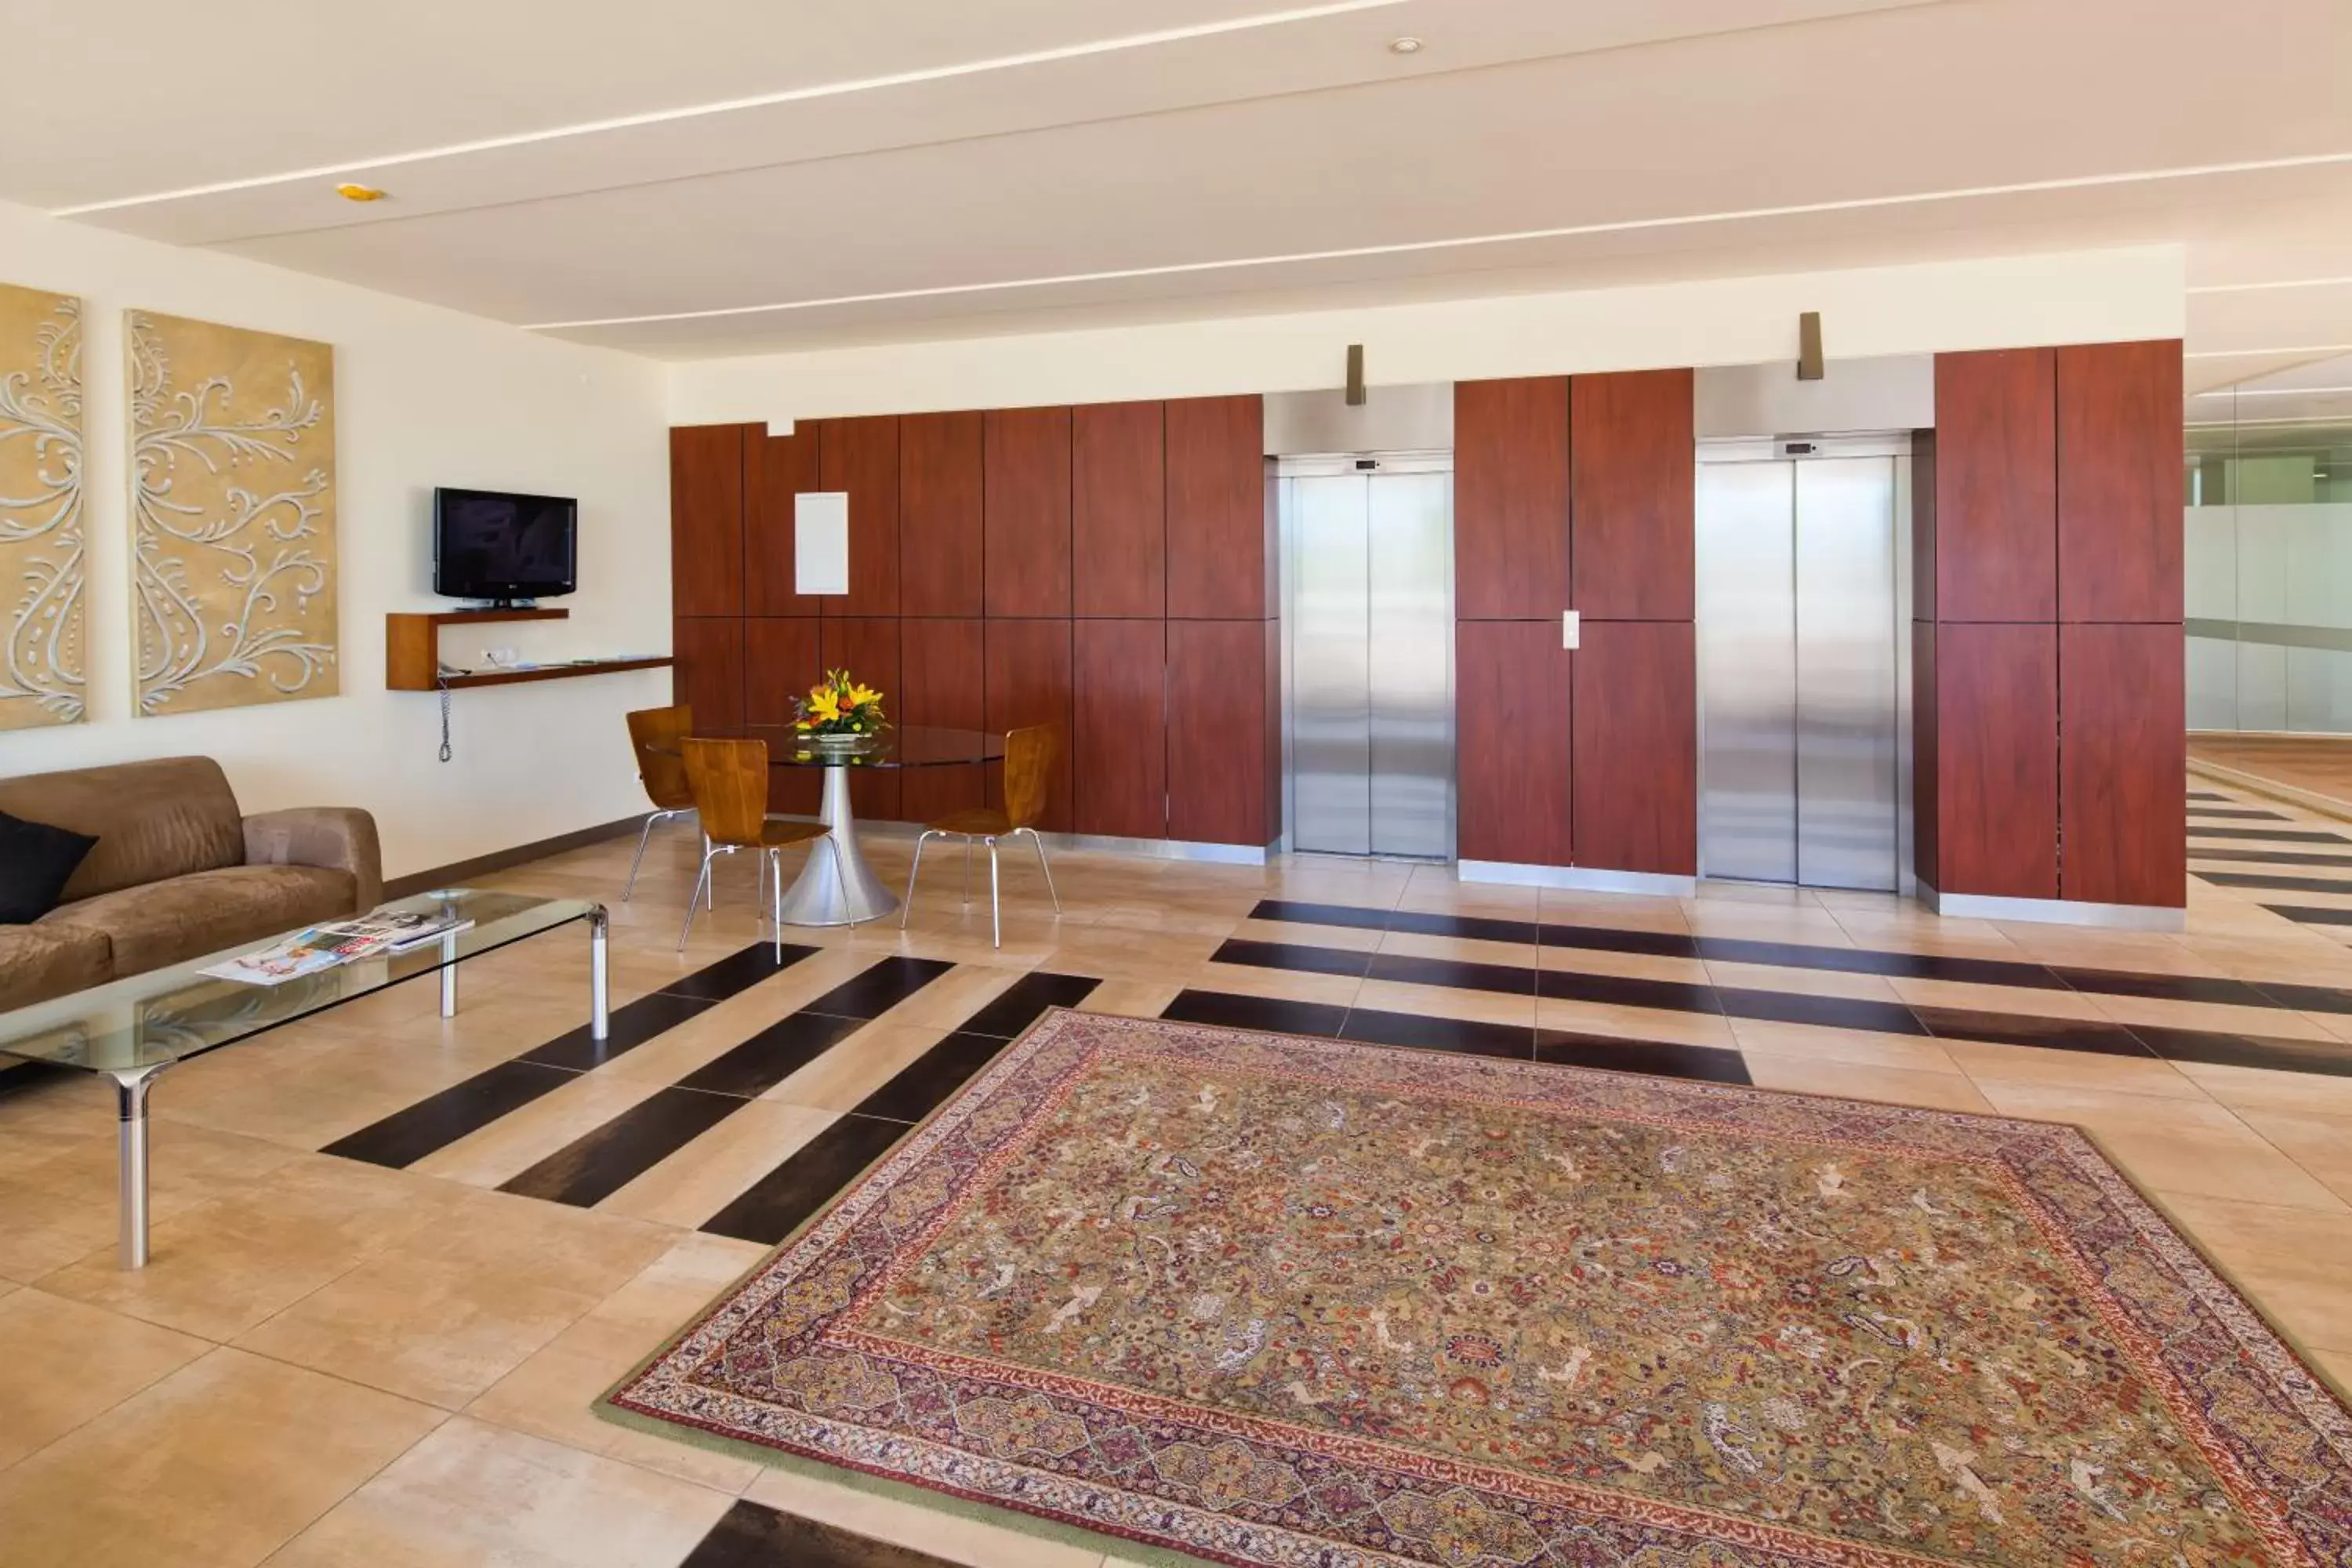 Lobby or reception in Villa Doris Suites